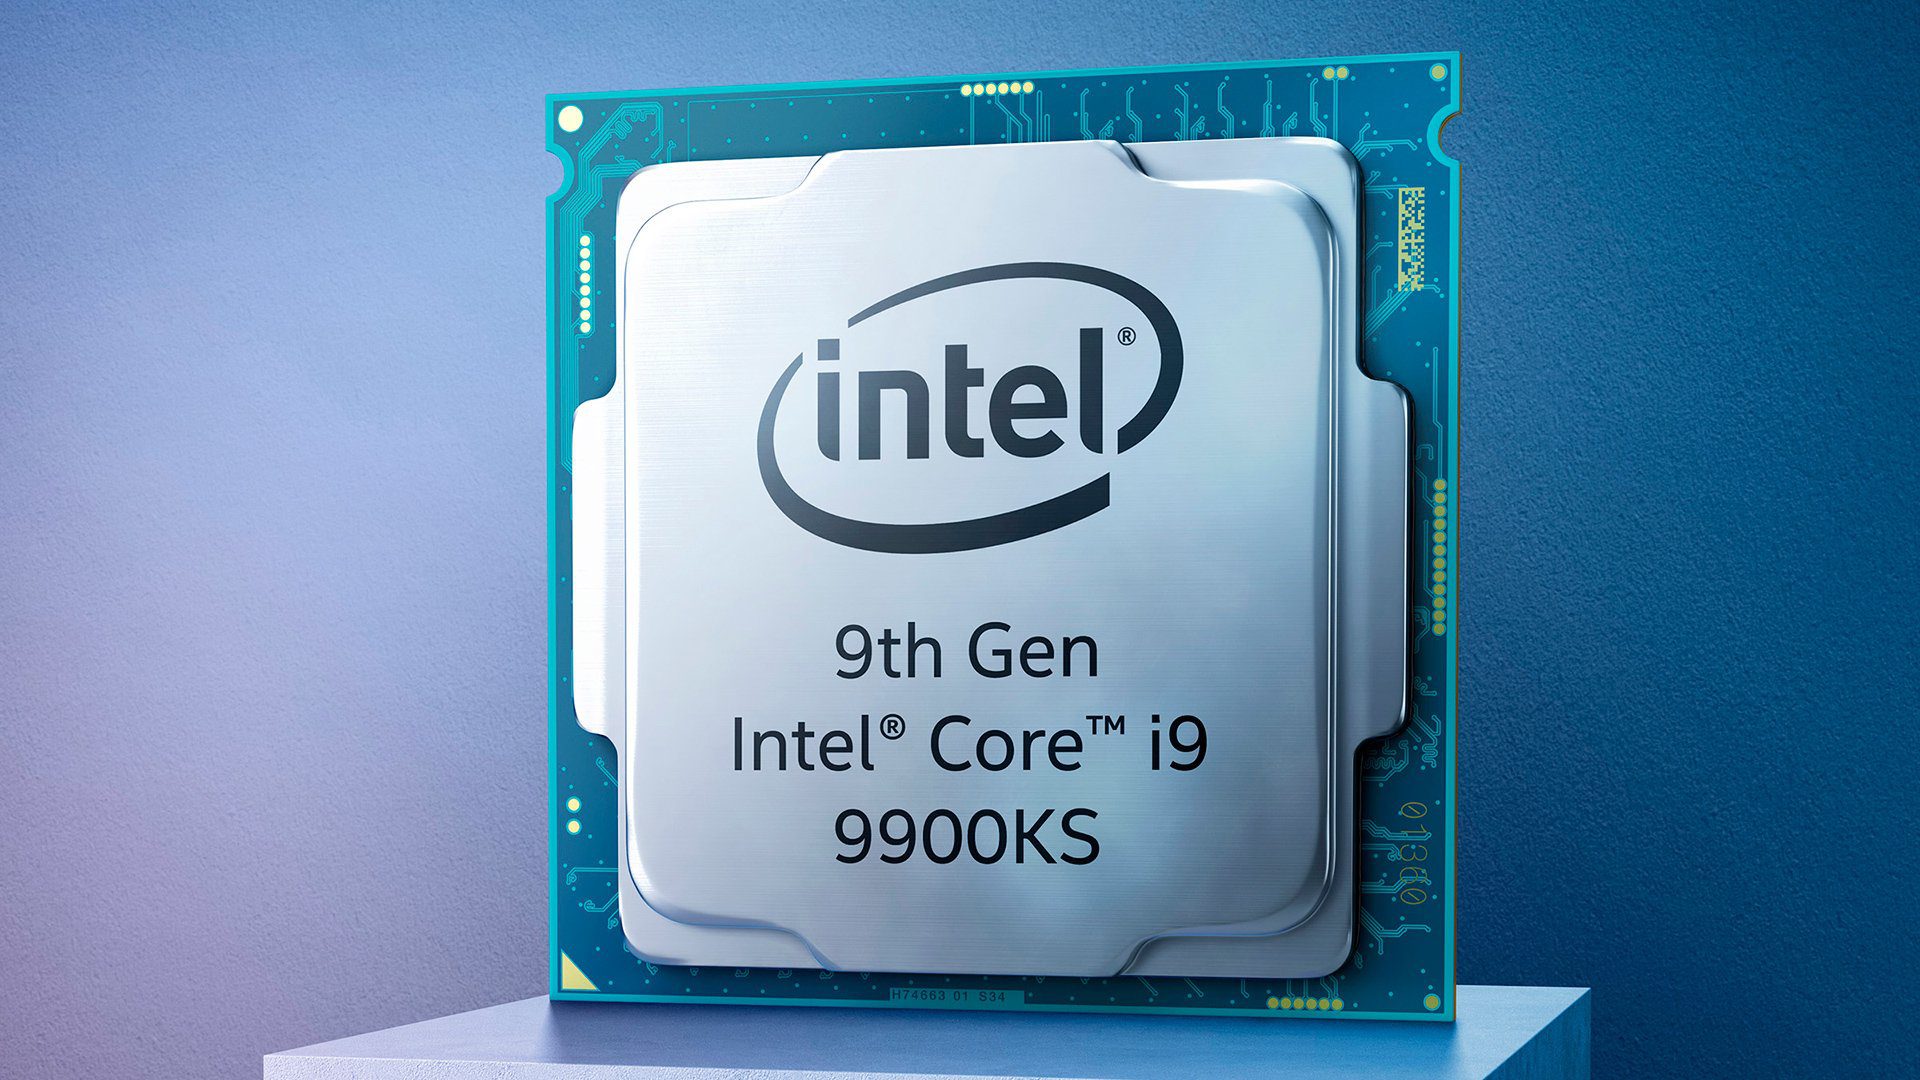 Intel оф сайт. I9 9900ks. Core i9 9900. Intel Core i9-9900k. Процессор Интел 9.